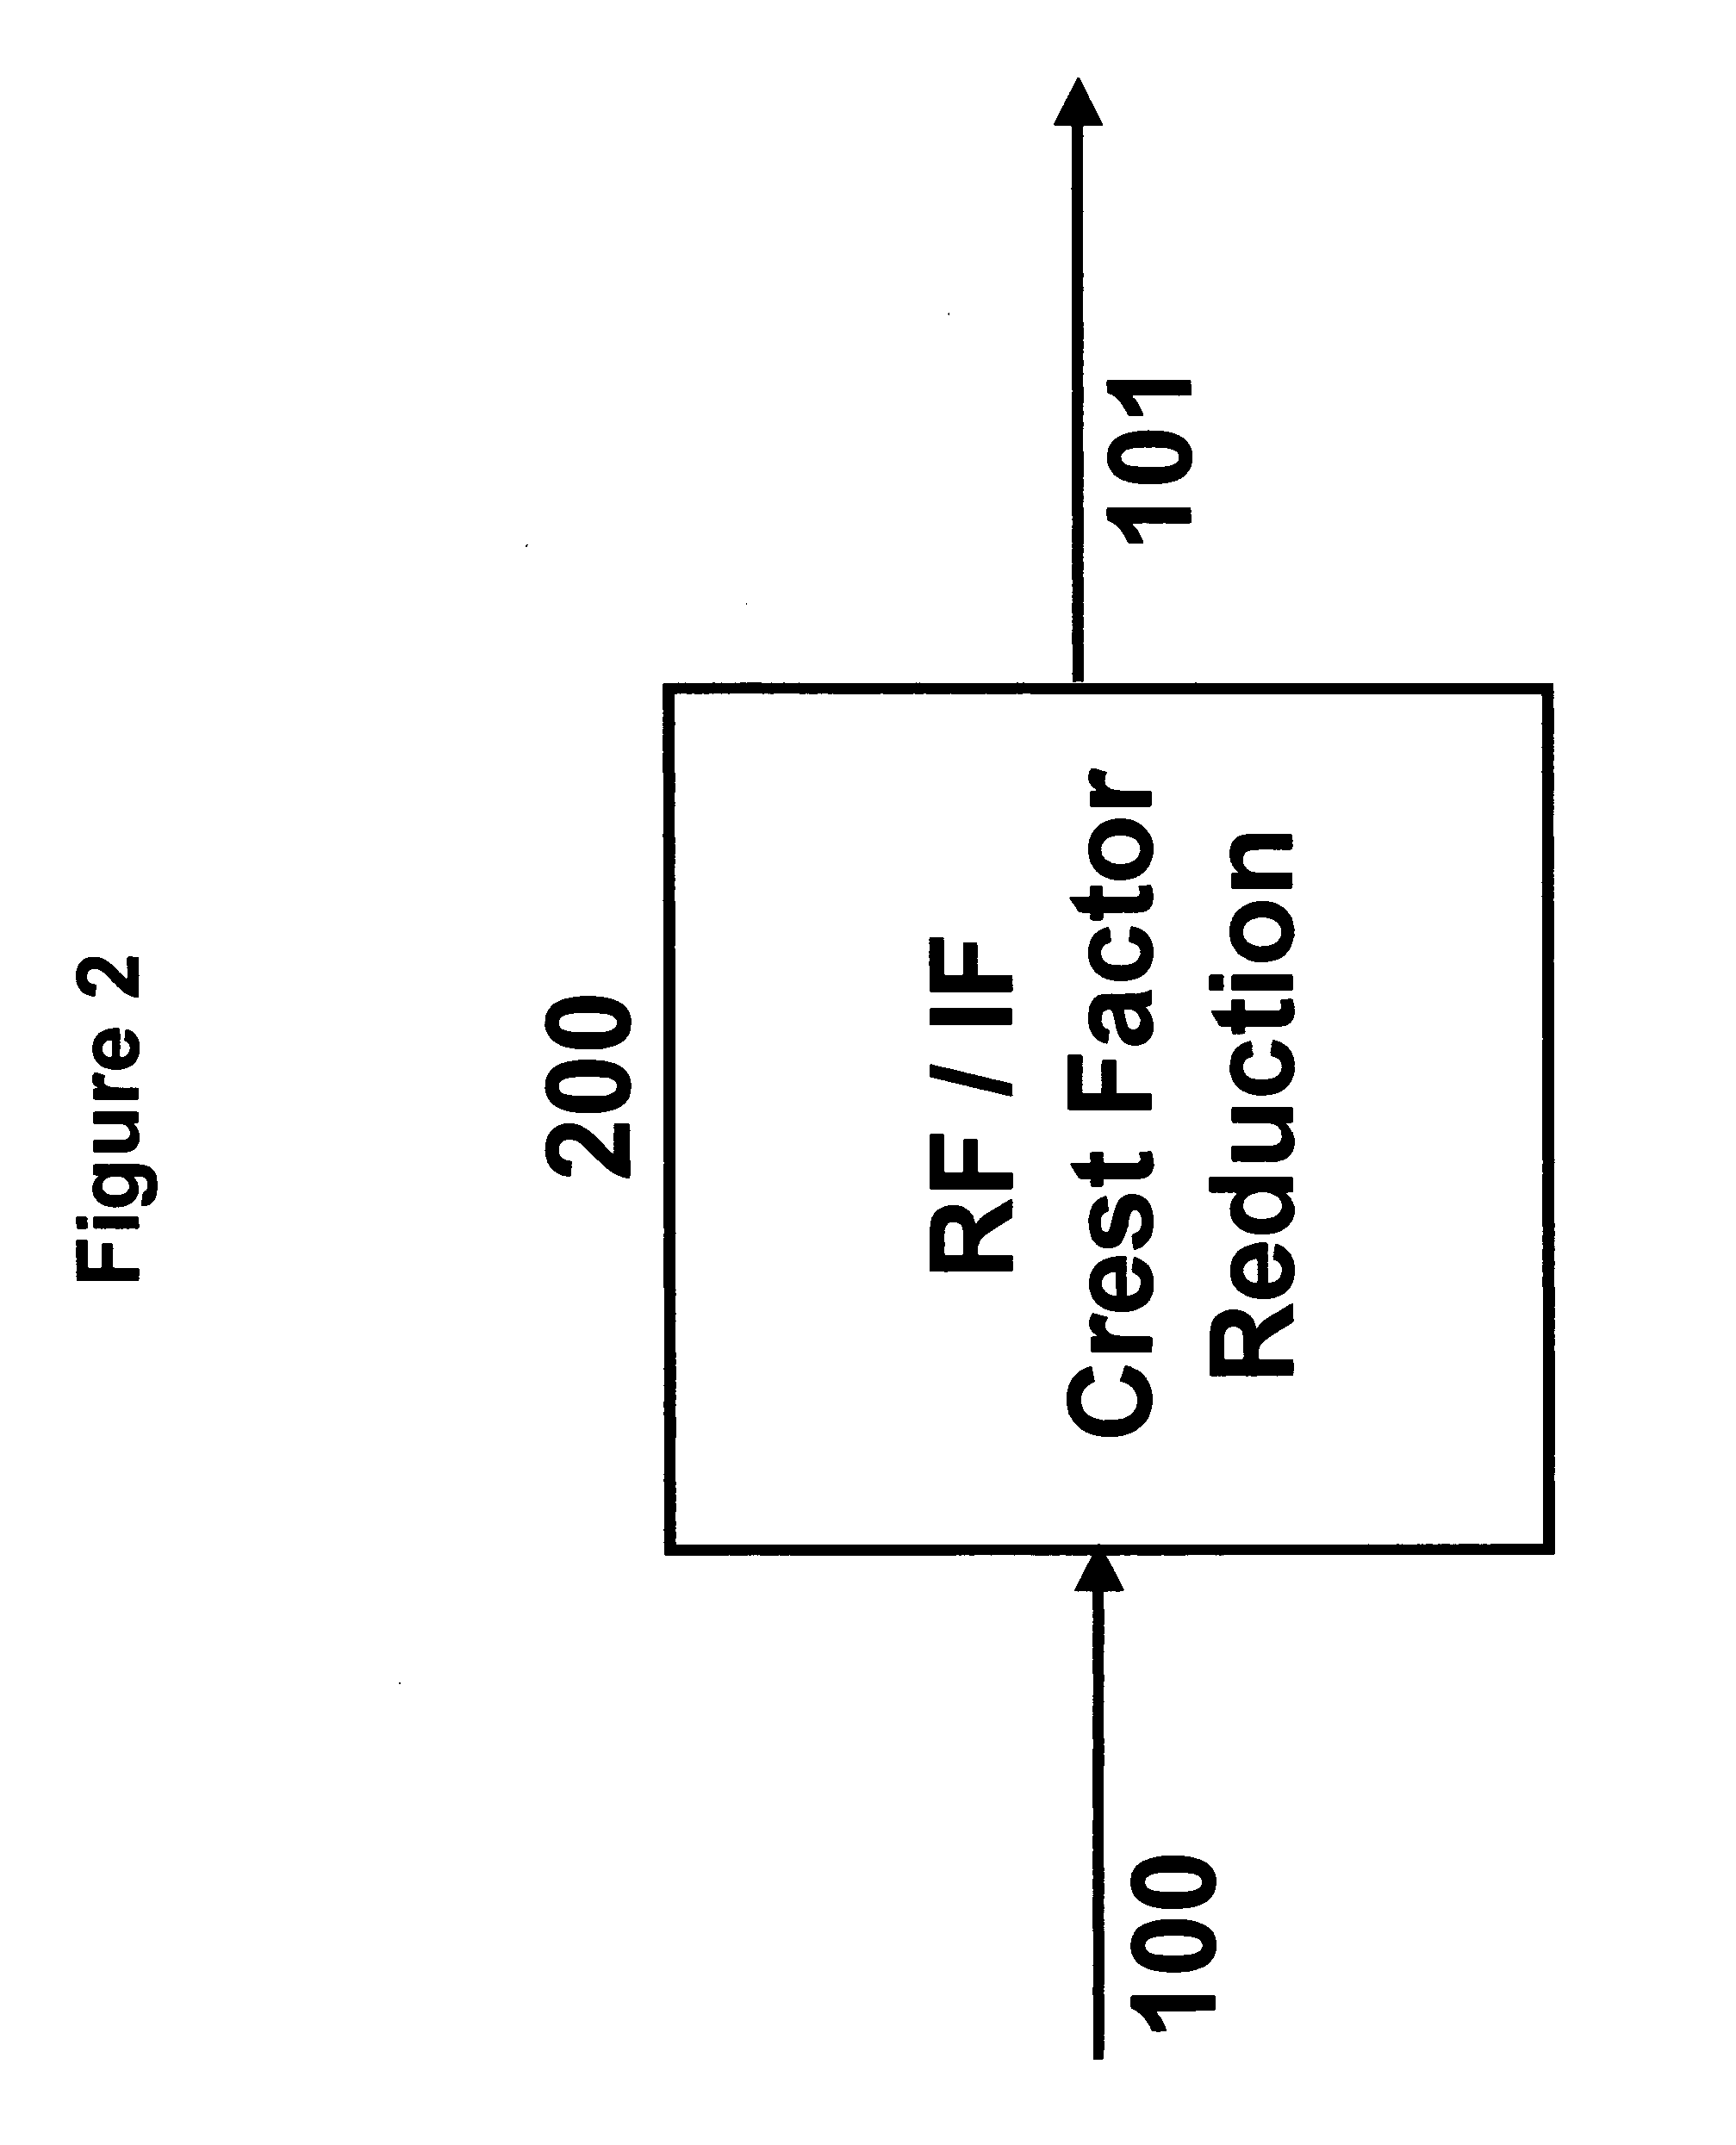 Simple crest factor reduction technique for non-constant envelope signals